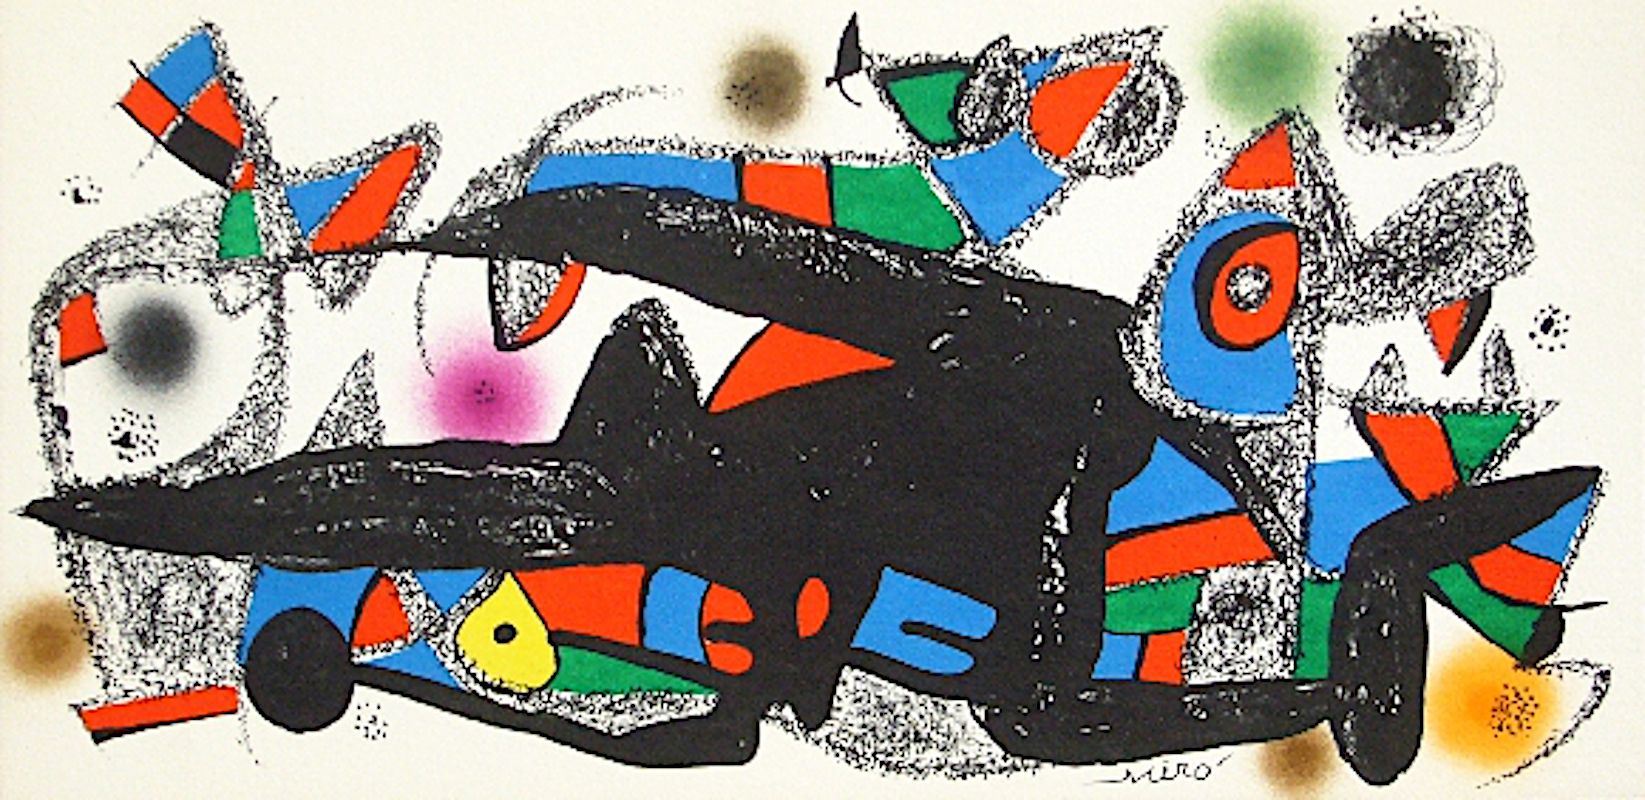 Joan Miro Joan MIRÓ

雕塑家米罗，丹麦，1974年

在版上签名的原版石版画

在瓜尔罗纸上

参考资料: Cramer no. 939

&hellip;